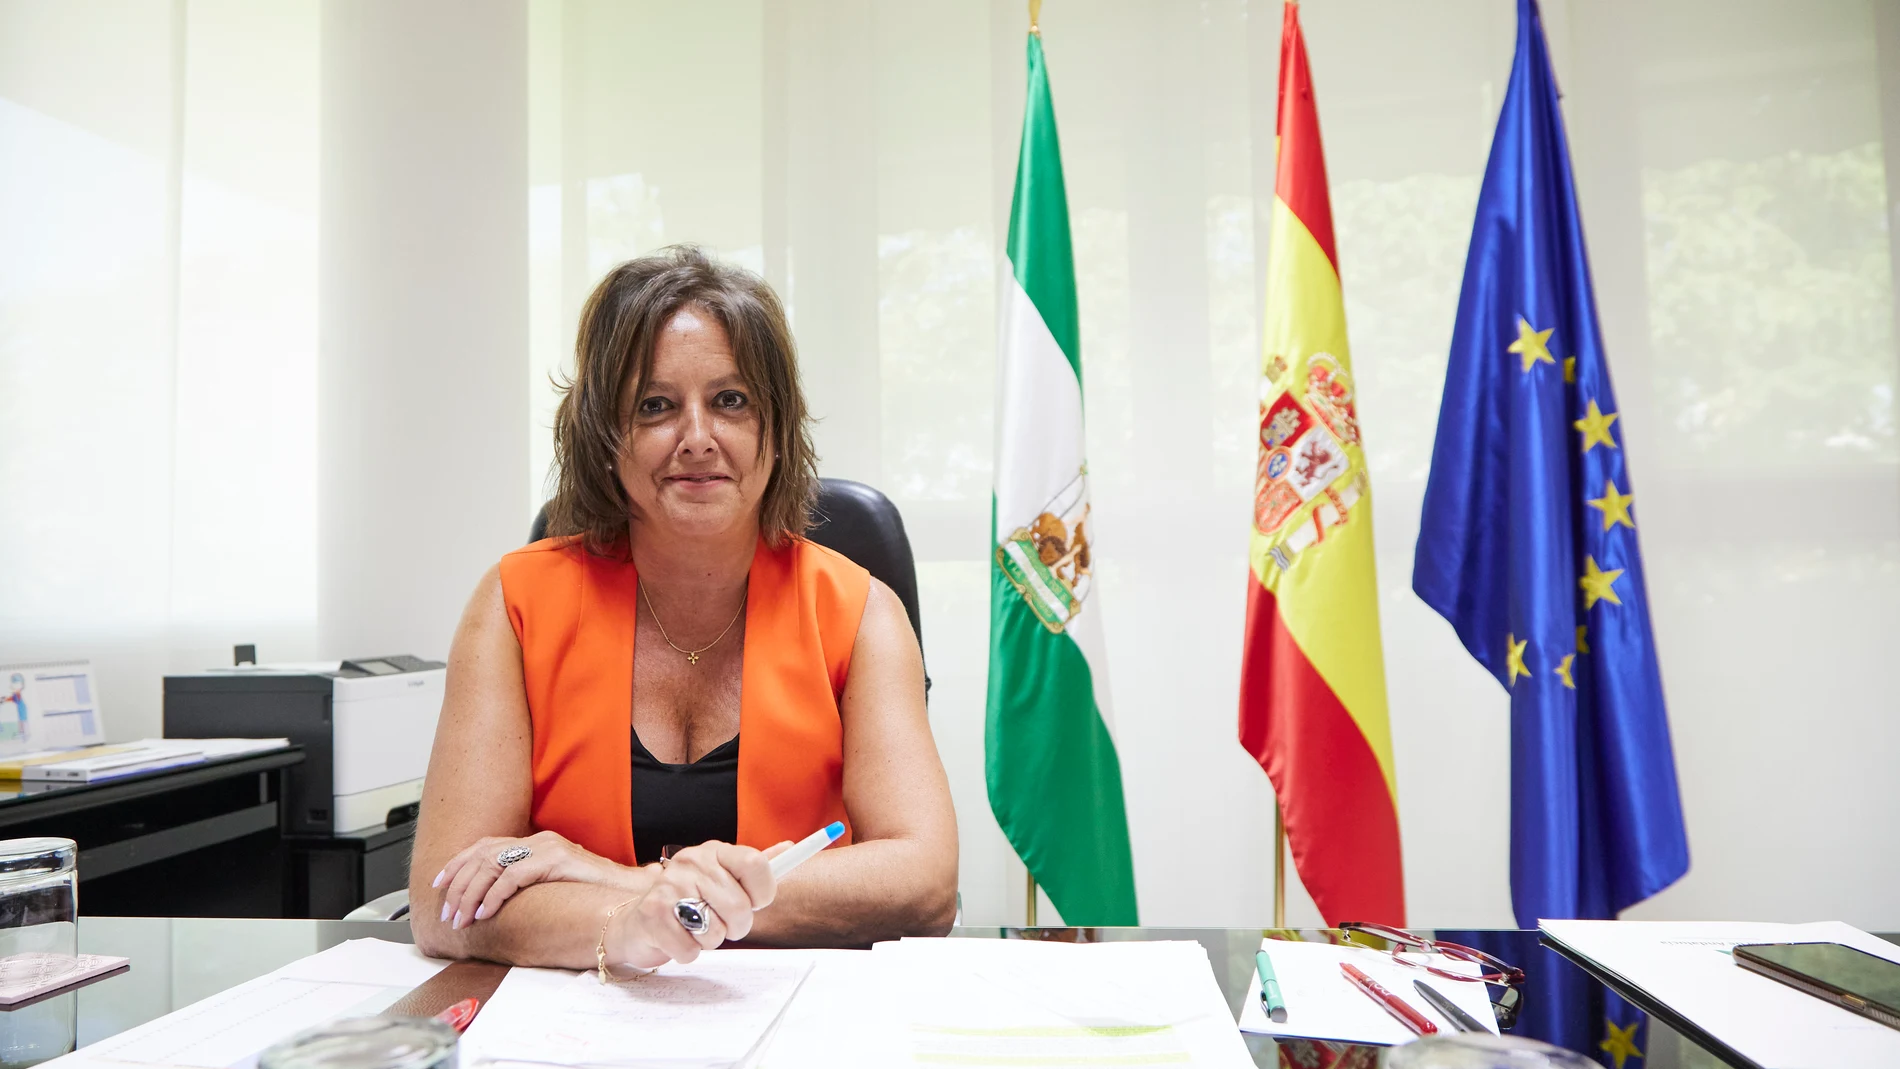 La consejera de Salud y Consumo de la Junta de Andalucía, Catalina García
31/08/2022